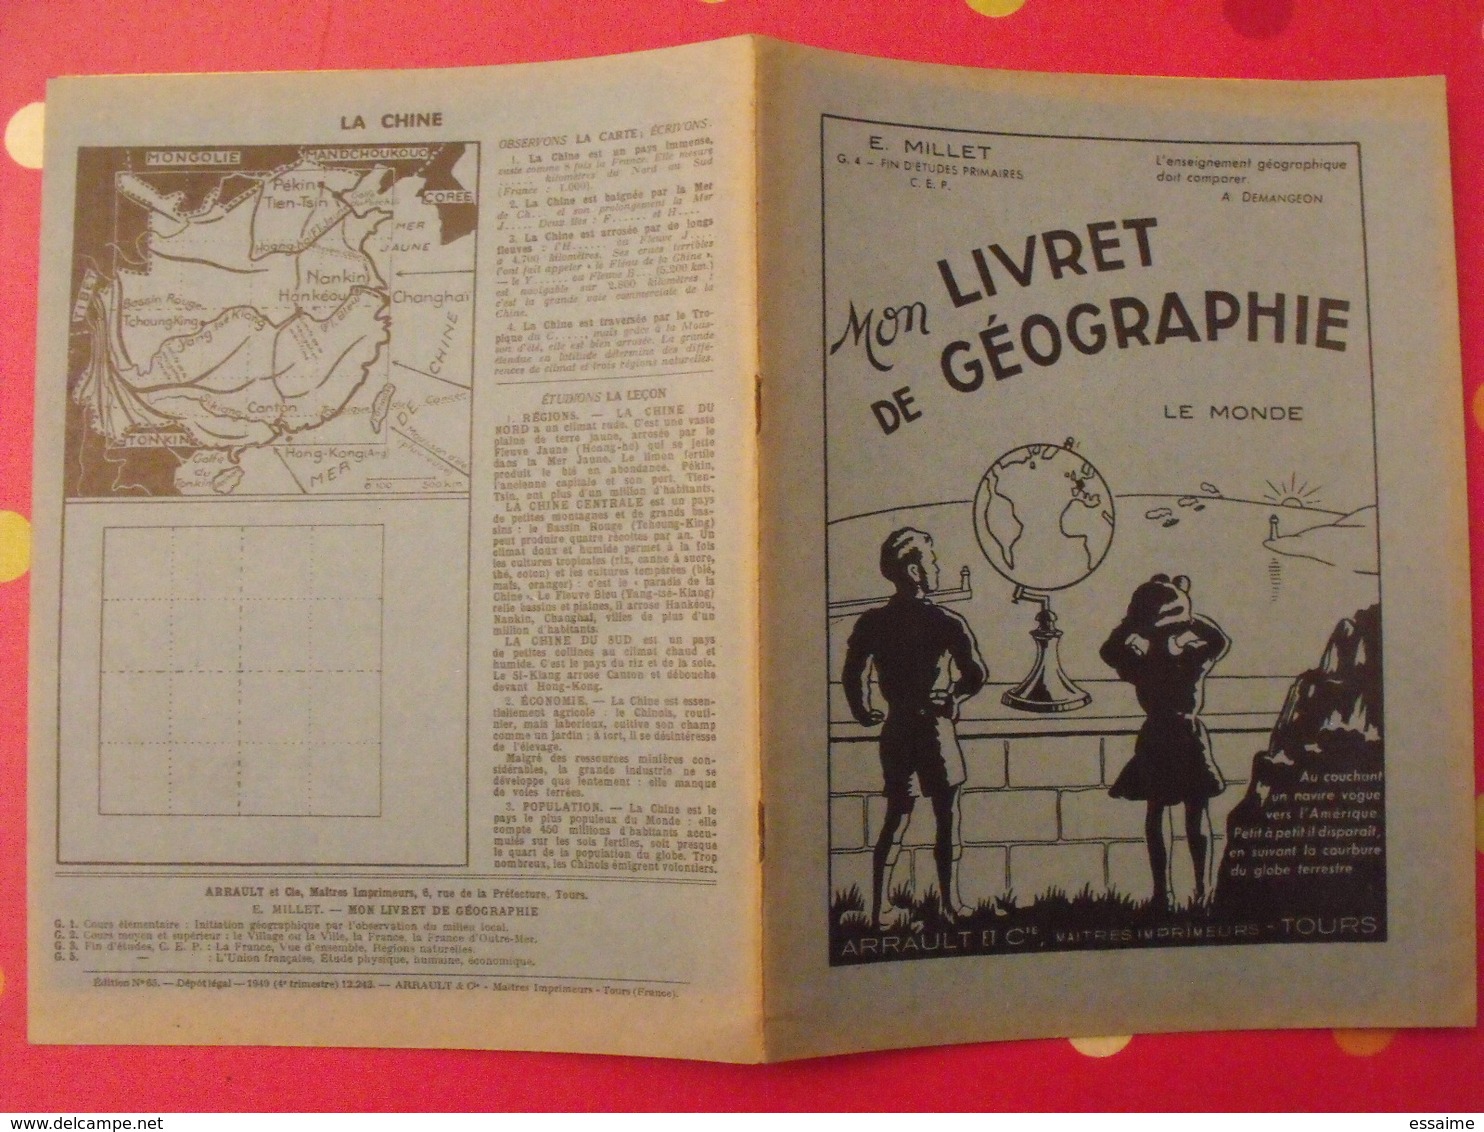 3 Livrets De Géographie. E. Millet. Arrault Et Cie, Tours, 1949, 1960. Communauté Française, Monde - Géographie